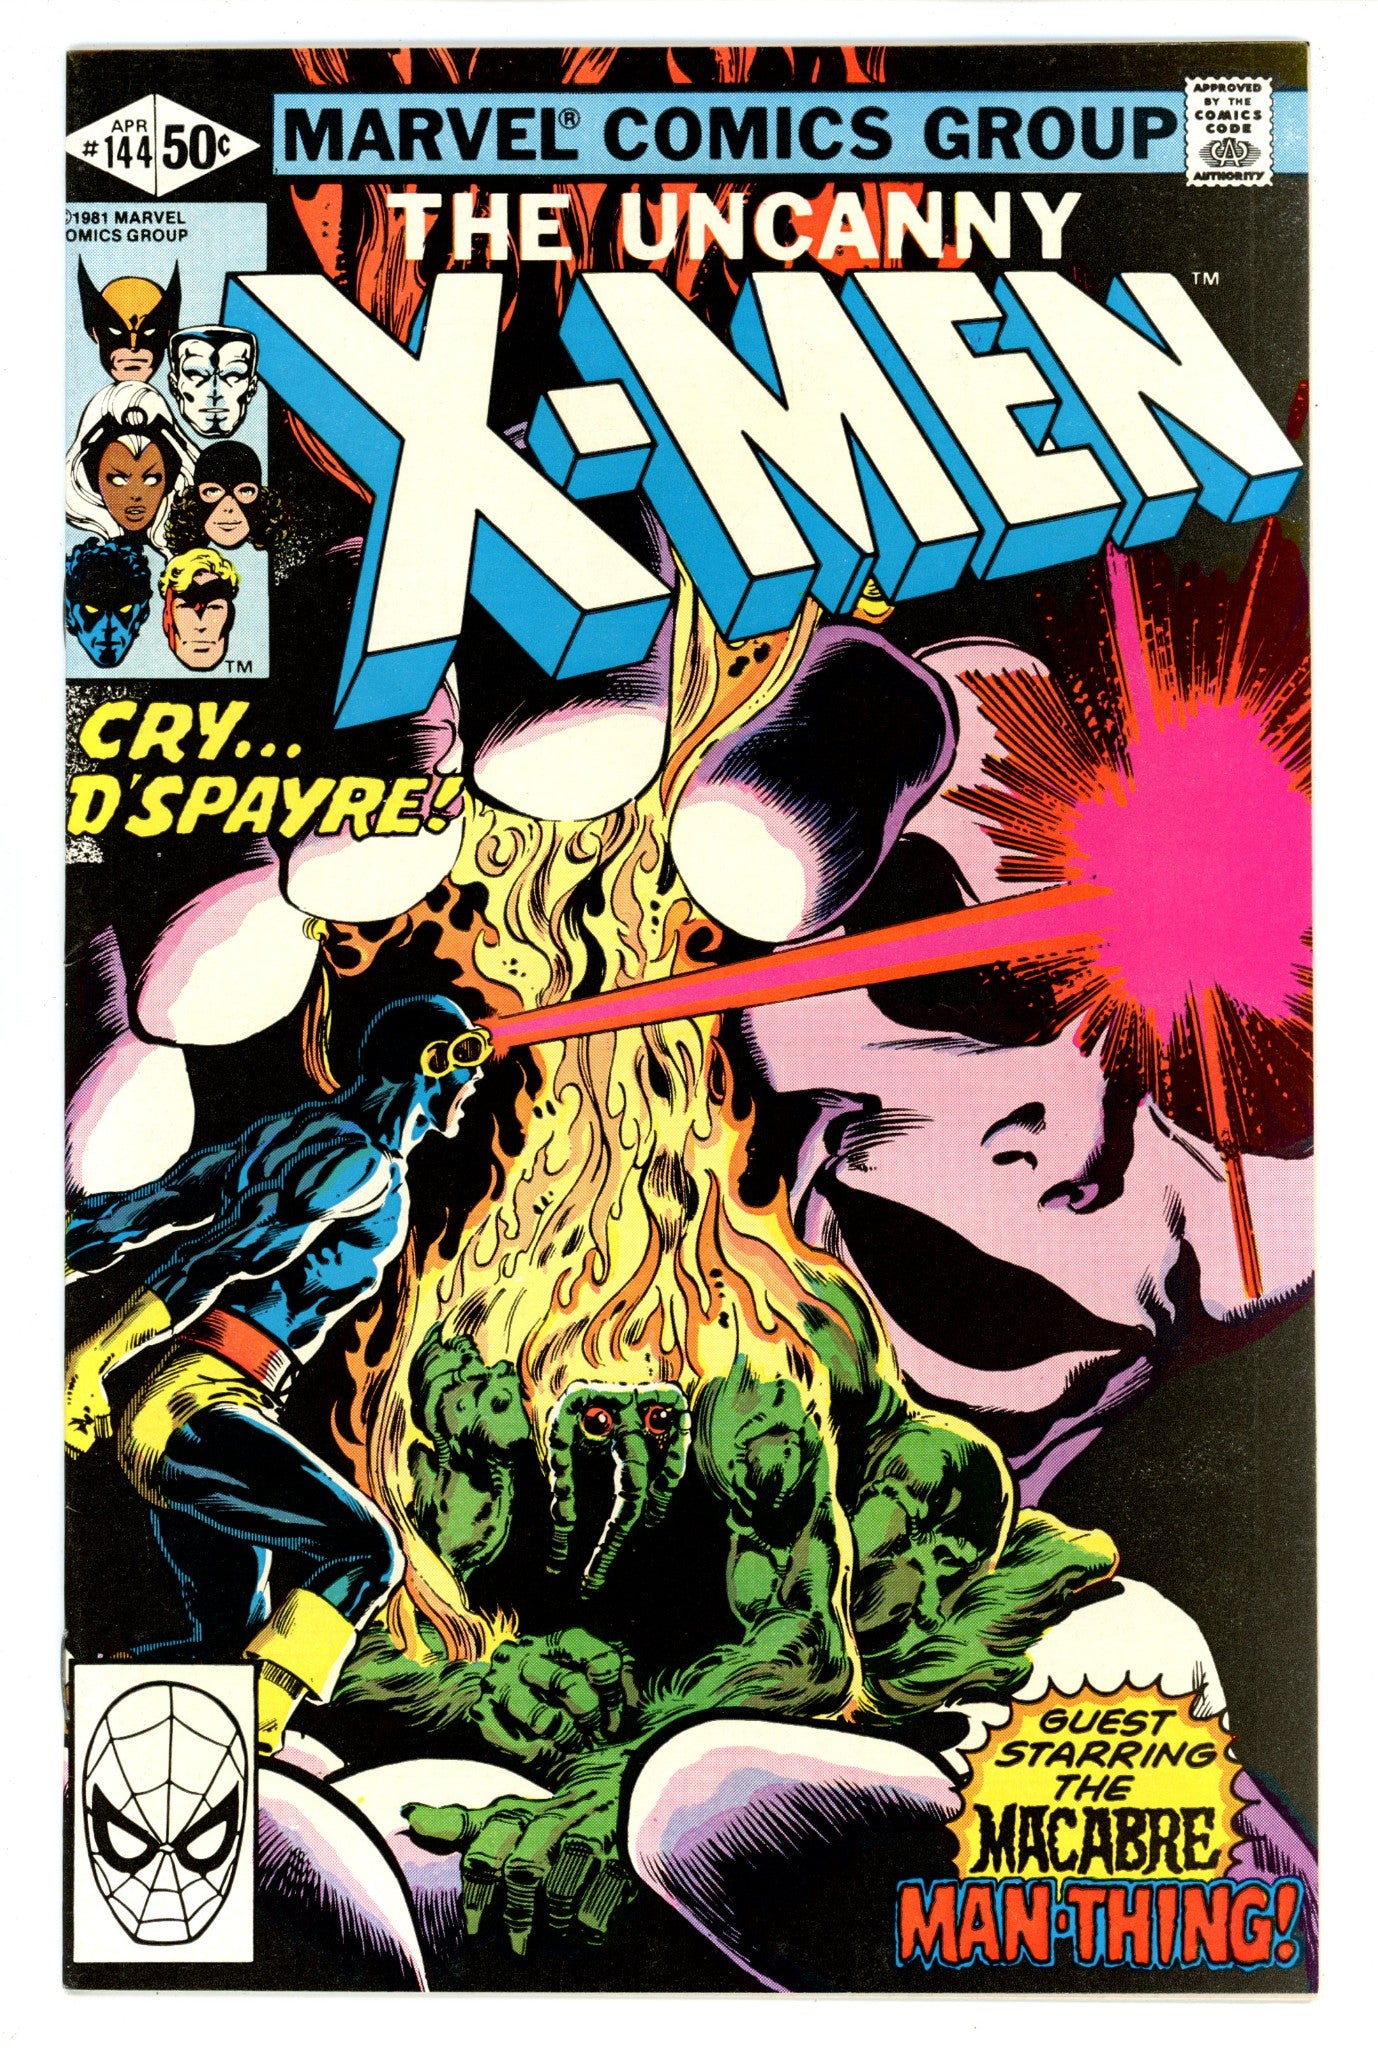 The Uncanny X-Men Vol 1 144 VF (8.0) (1981) 